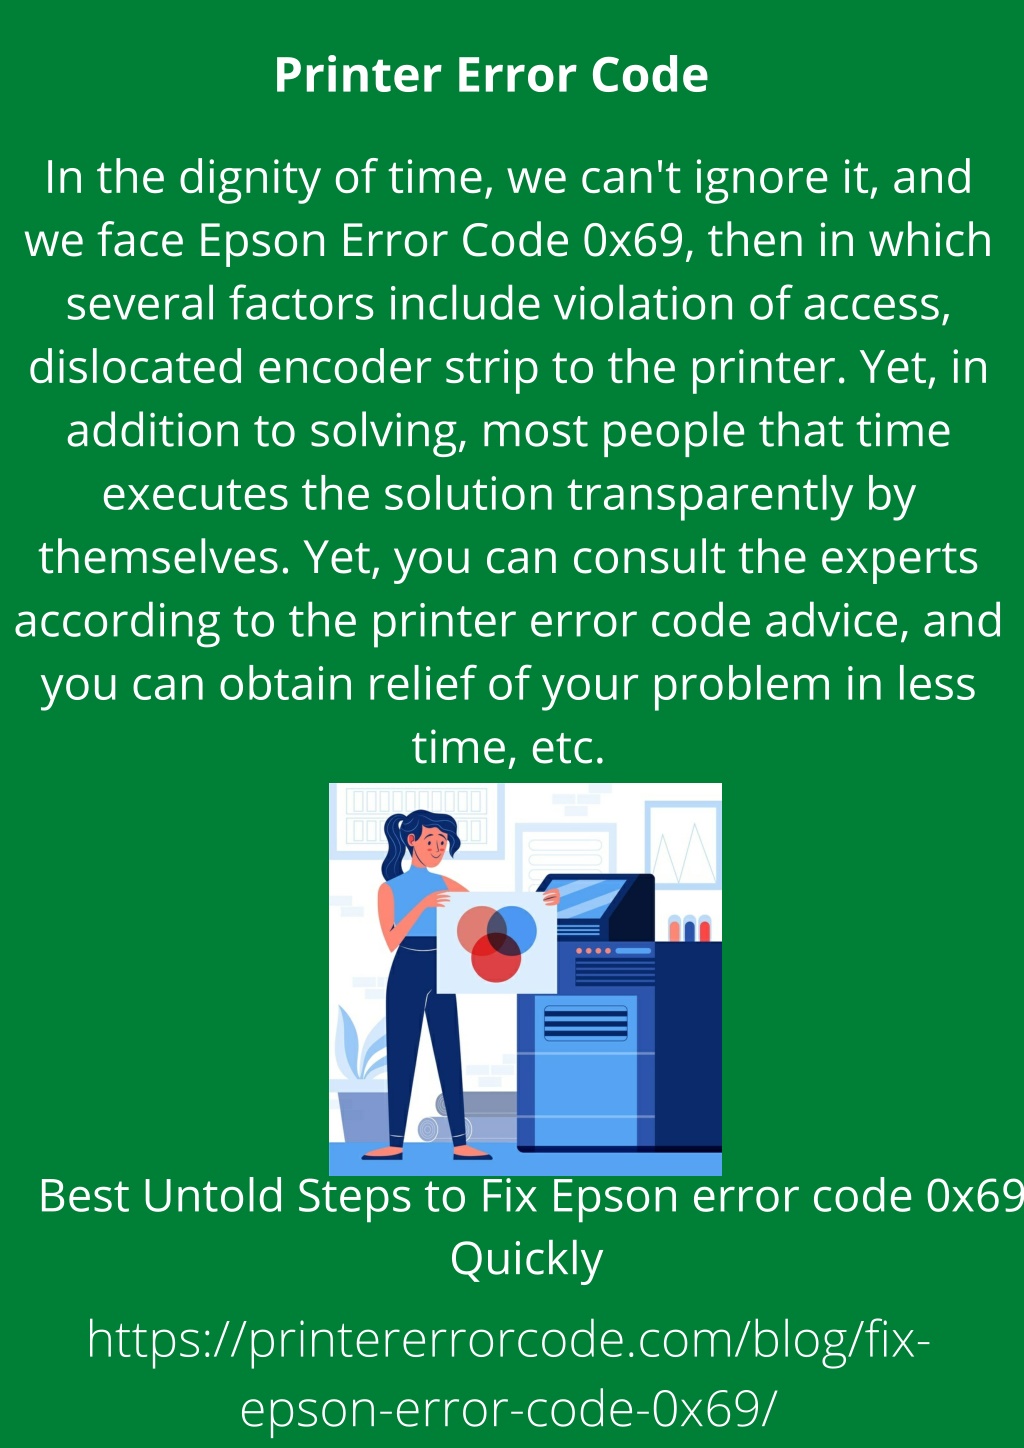 Ppt Best Untold Steps To Fix Epson Error Code 0x69 Quickly Powerpoint Presentation Id10835326 9296